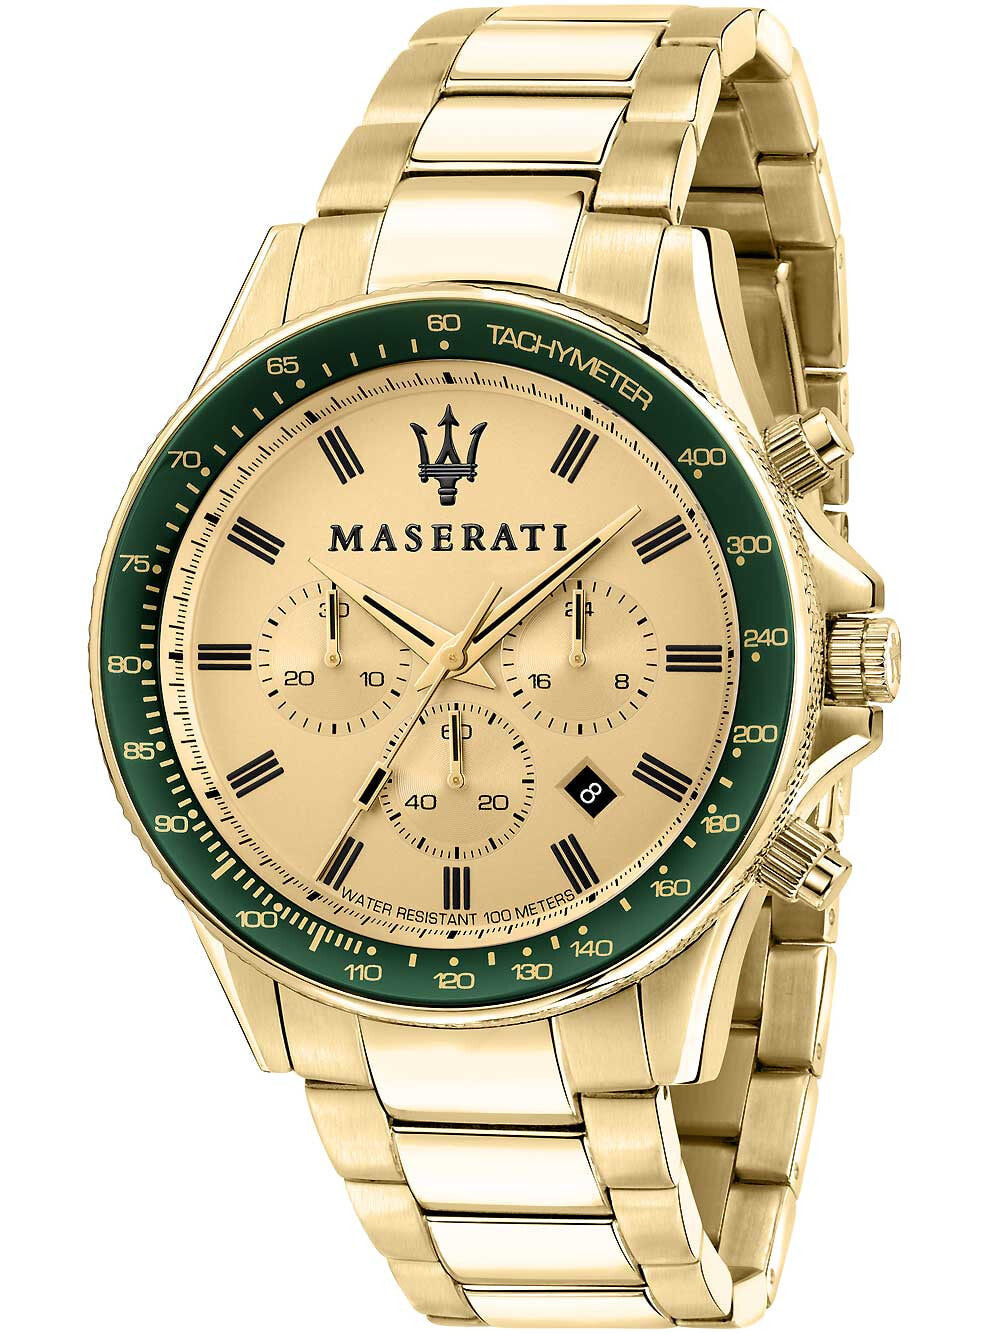 Мужские наручные часы с золотым браслетом Maserati R8873640005 Sfida chronograph 44mm 10ATM